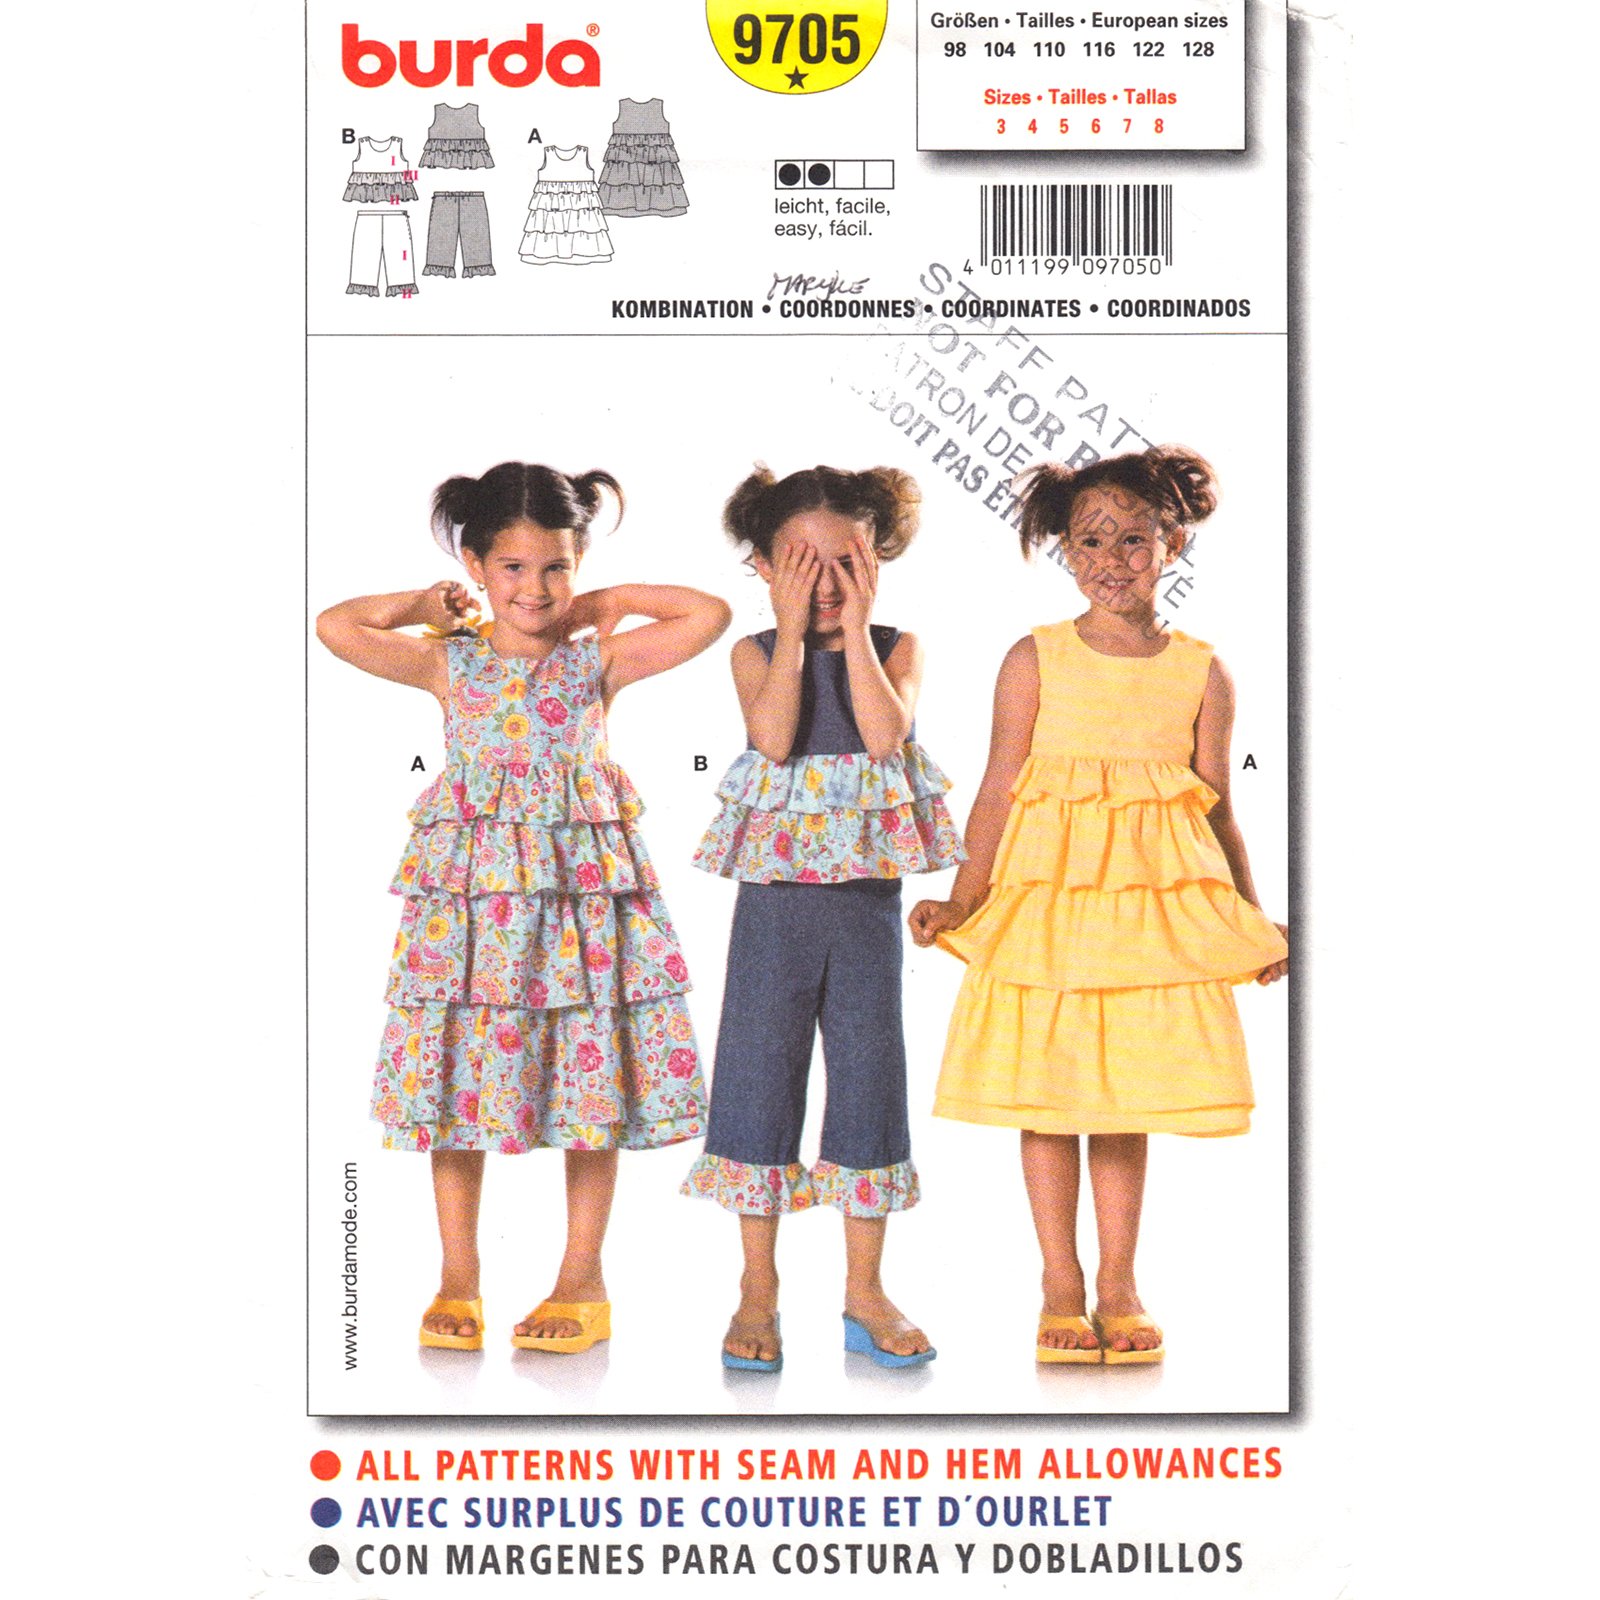 Burda 9705 girls pattern